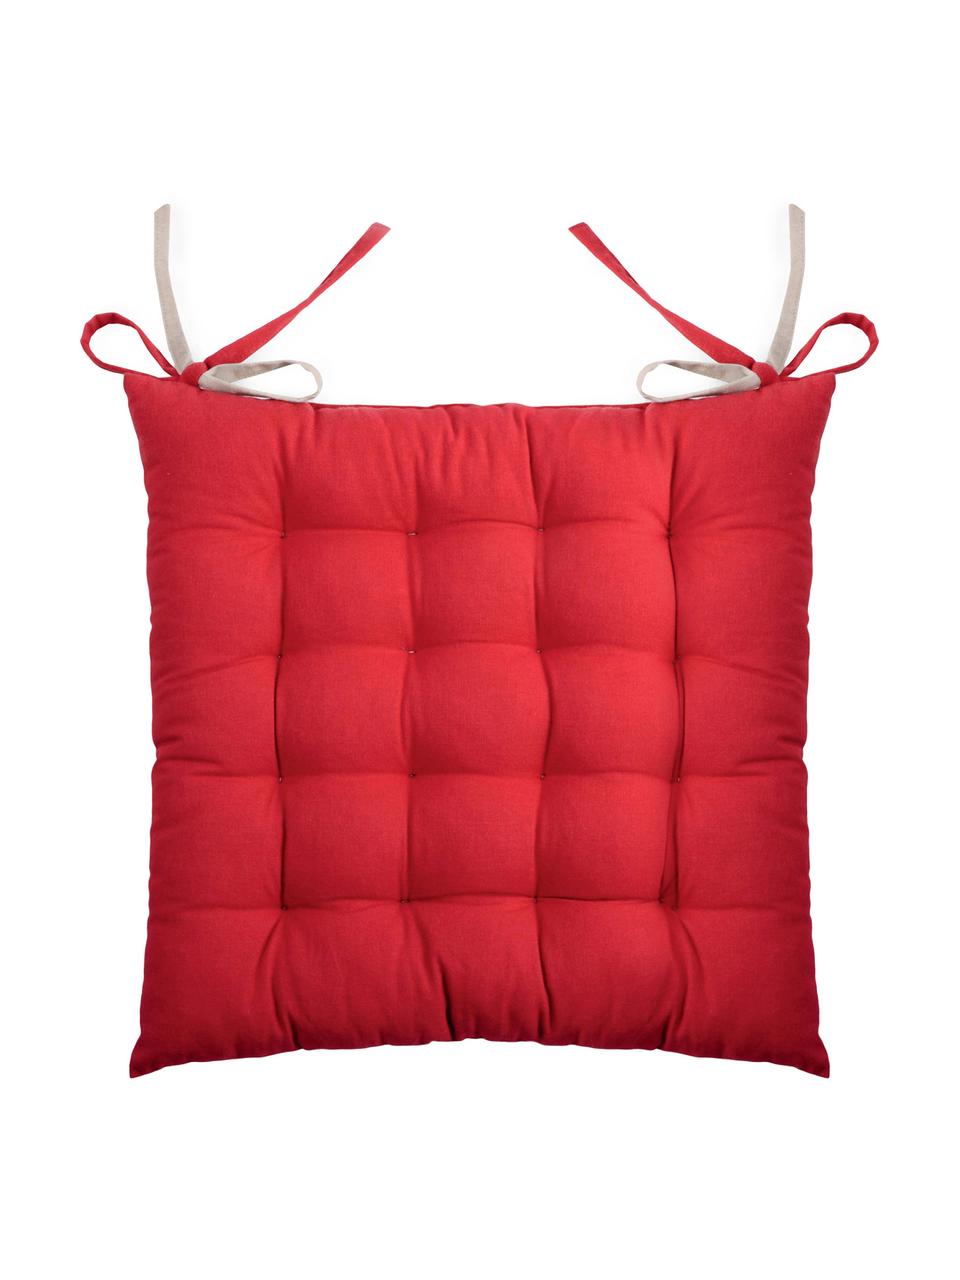 Dwustronna poduszka siedziska na krzesło Duo, 2 szt., Czerwony, beżowy, S 35 x D 35 cm